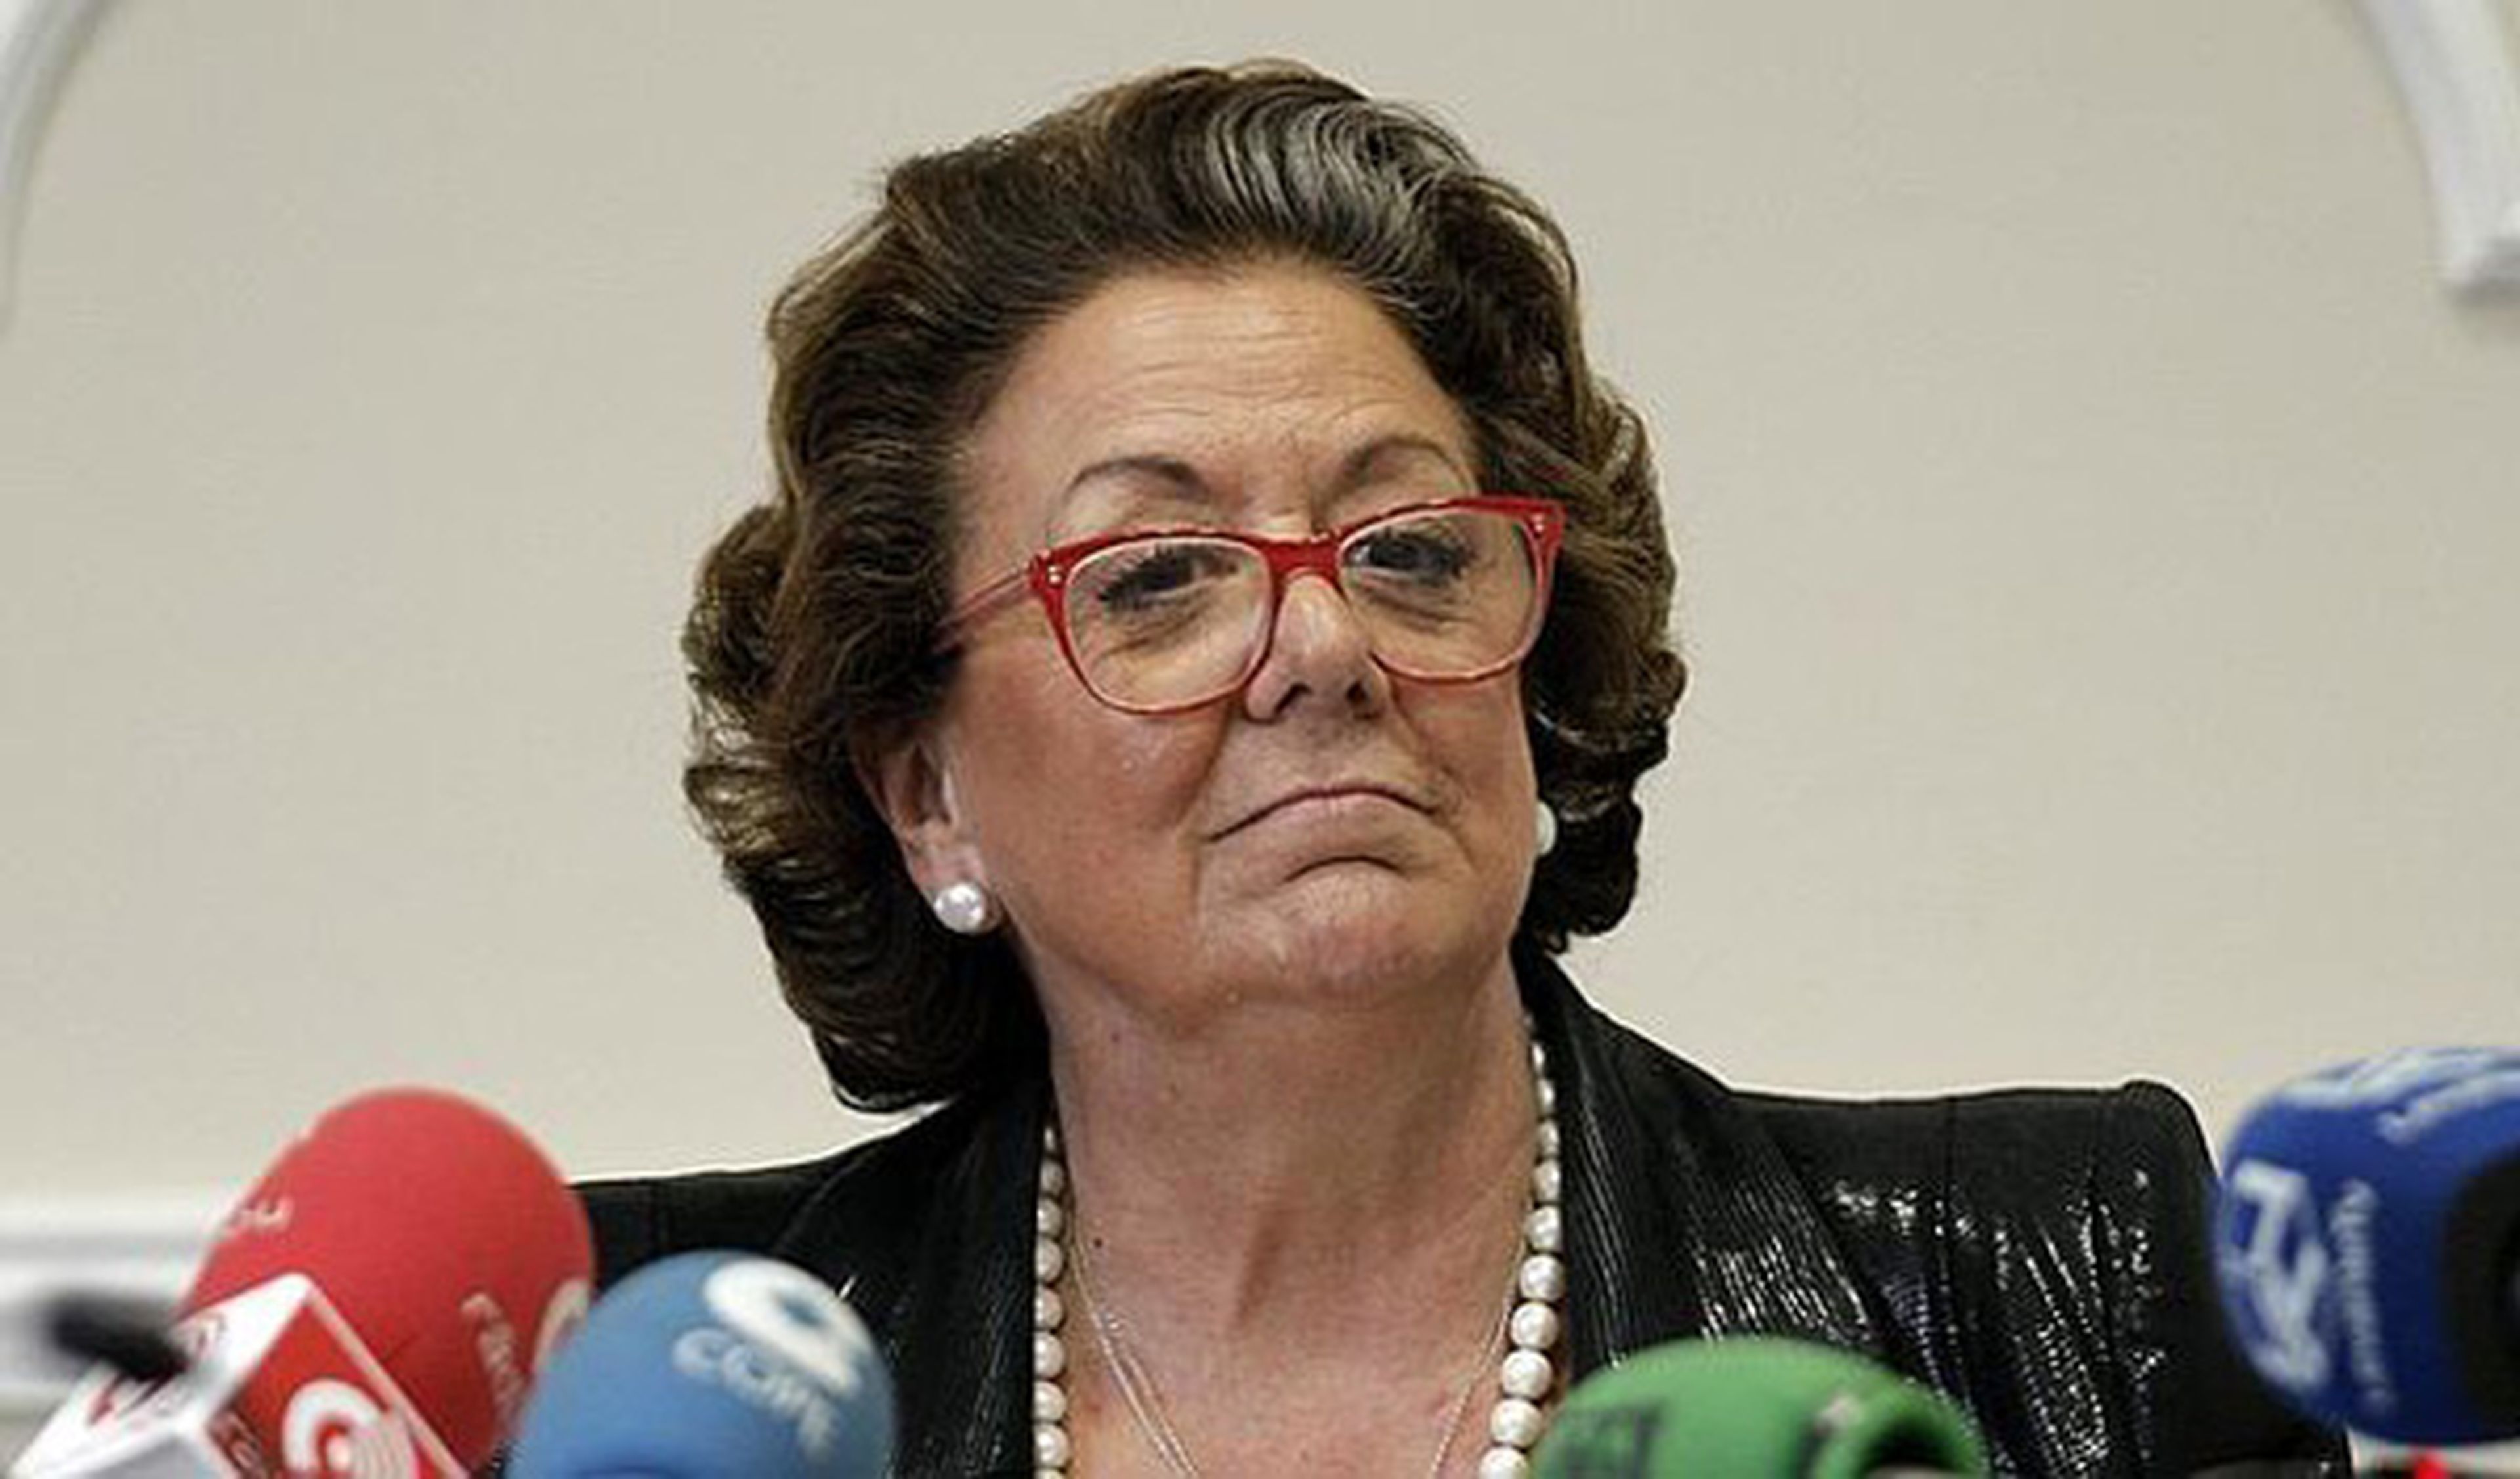 Rita Barberá saca su coche del ayuntamiento 23 años después